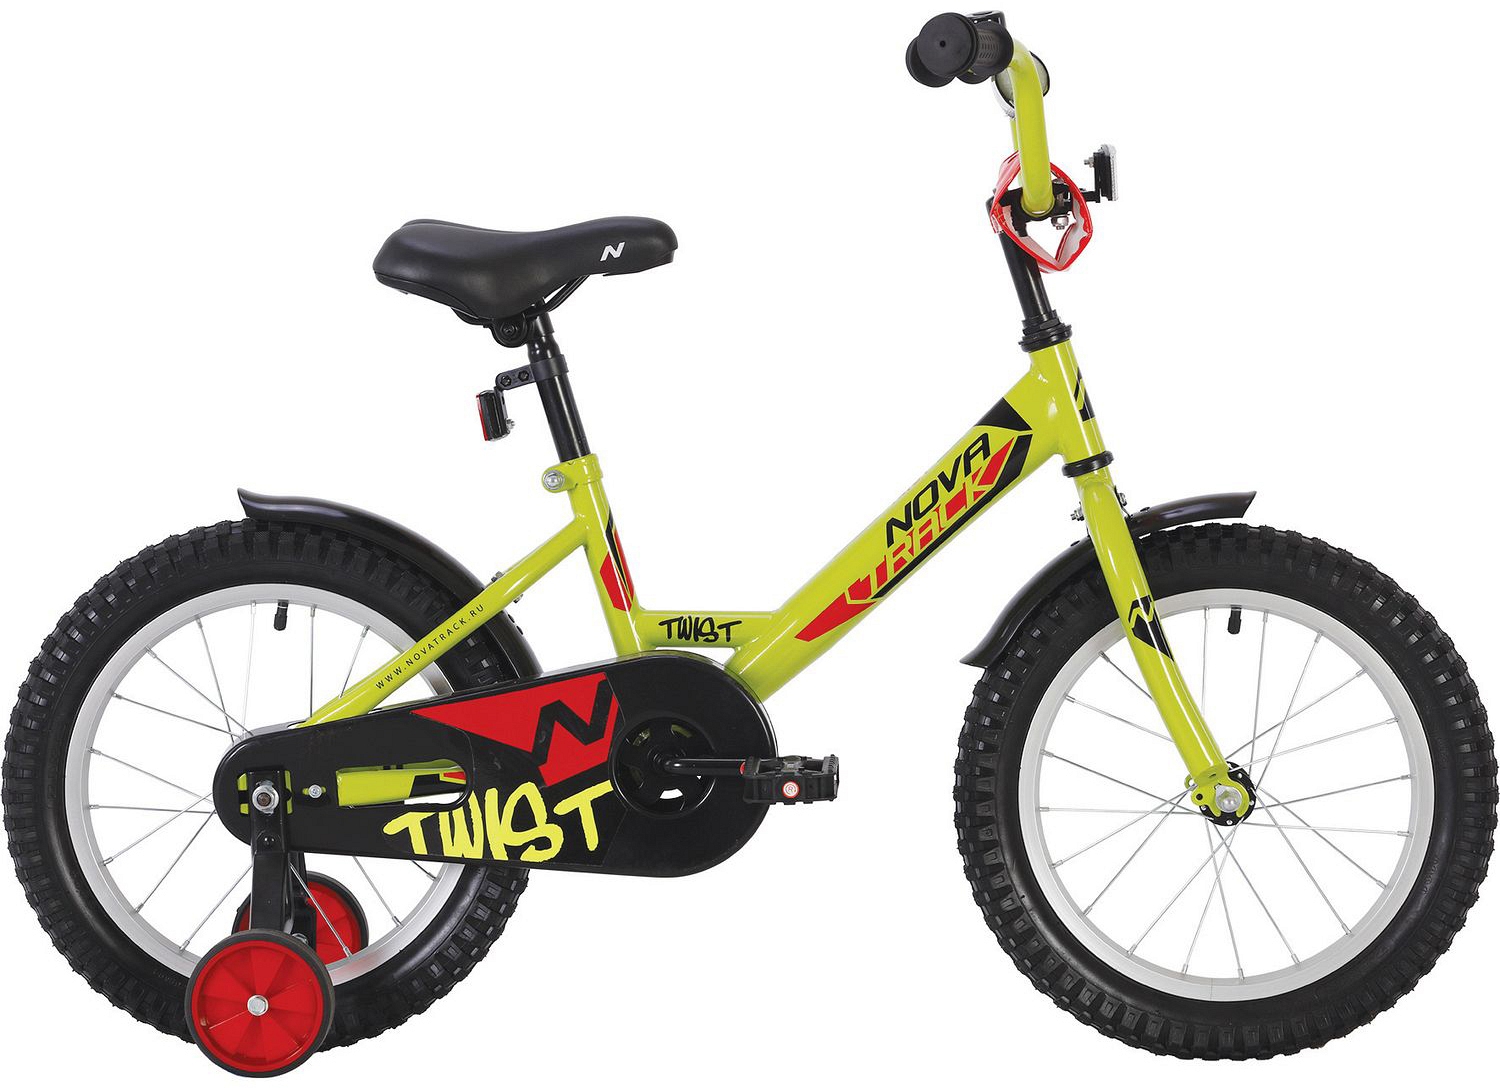  Отзывы о Детском велосипеде Novatrack Twist 12 2020